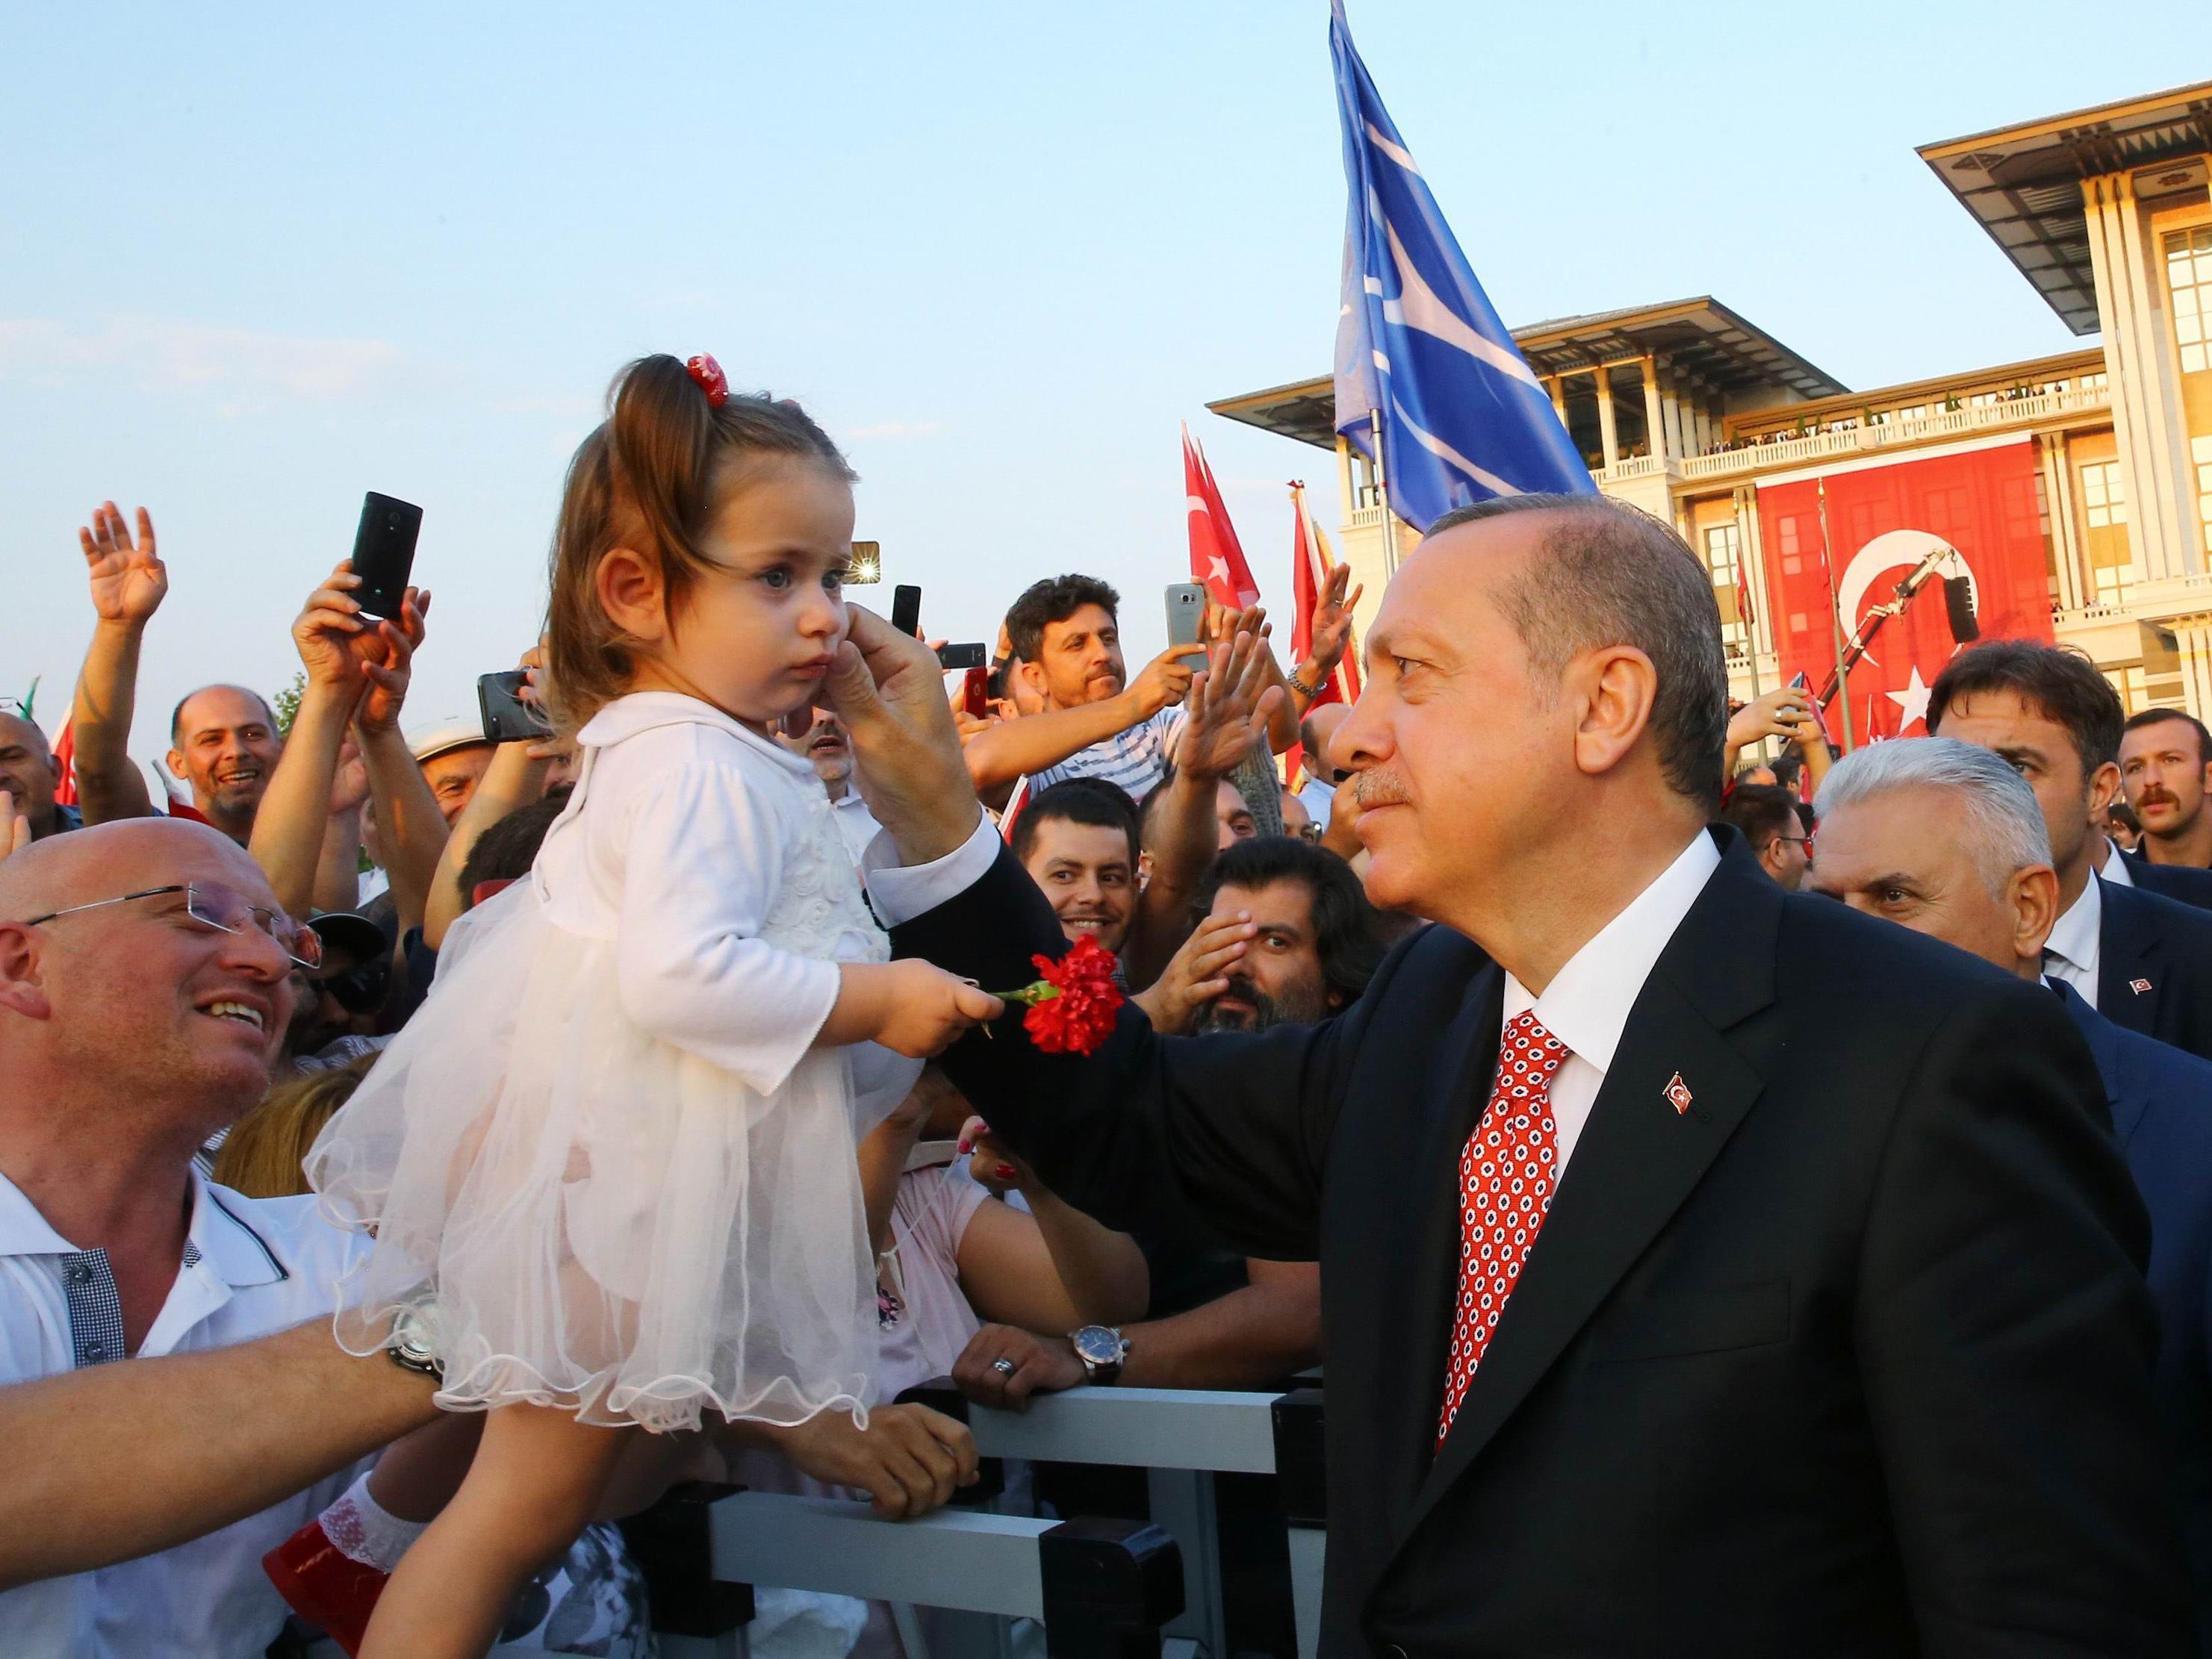 NAch dem Putschversuch in der Türkei wurde die Todesstrafe zum zentralen Thema für Erdogan und seine AKP.